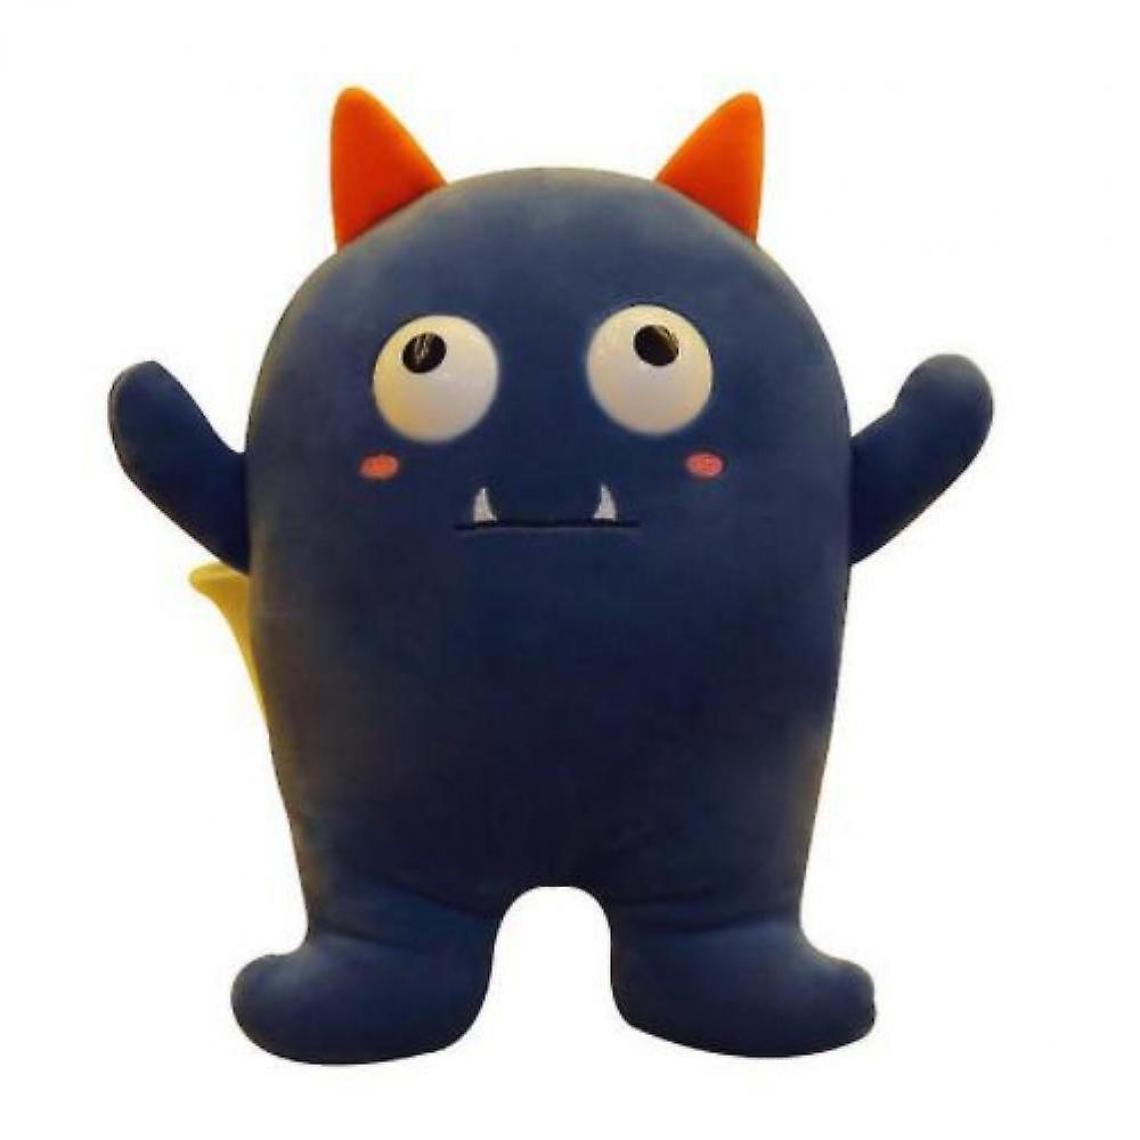 Universal - Jouets en peluche créatifs petits démons poupées petits monstres oreillers dessins animés jouets cadeaux jouets (bleu foncé) - Doudous